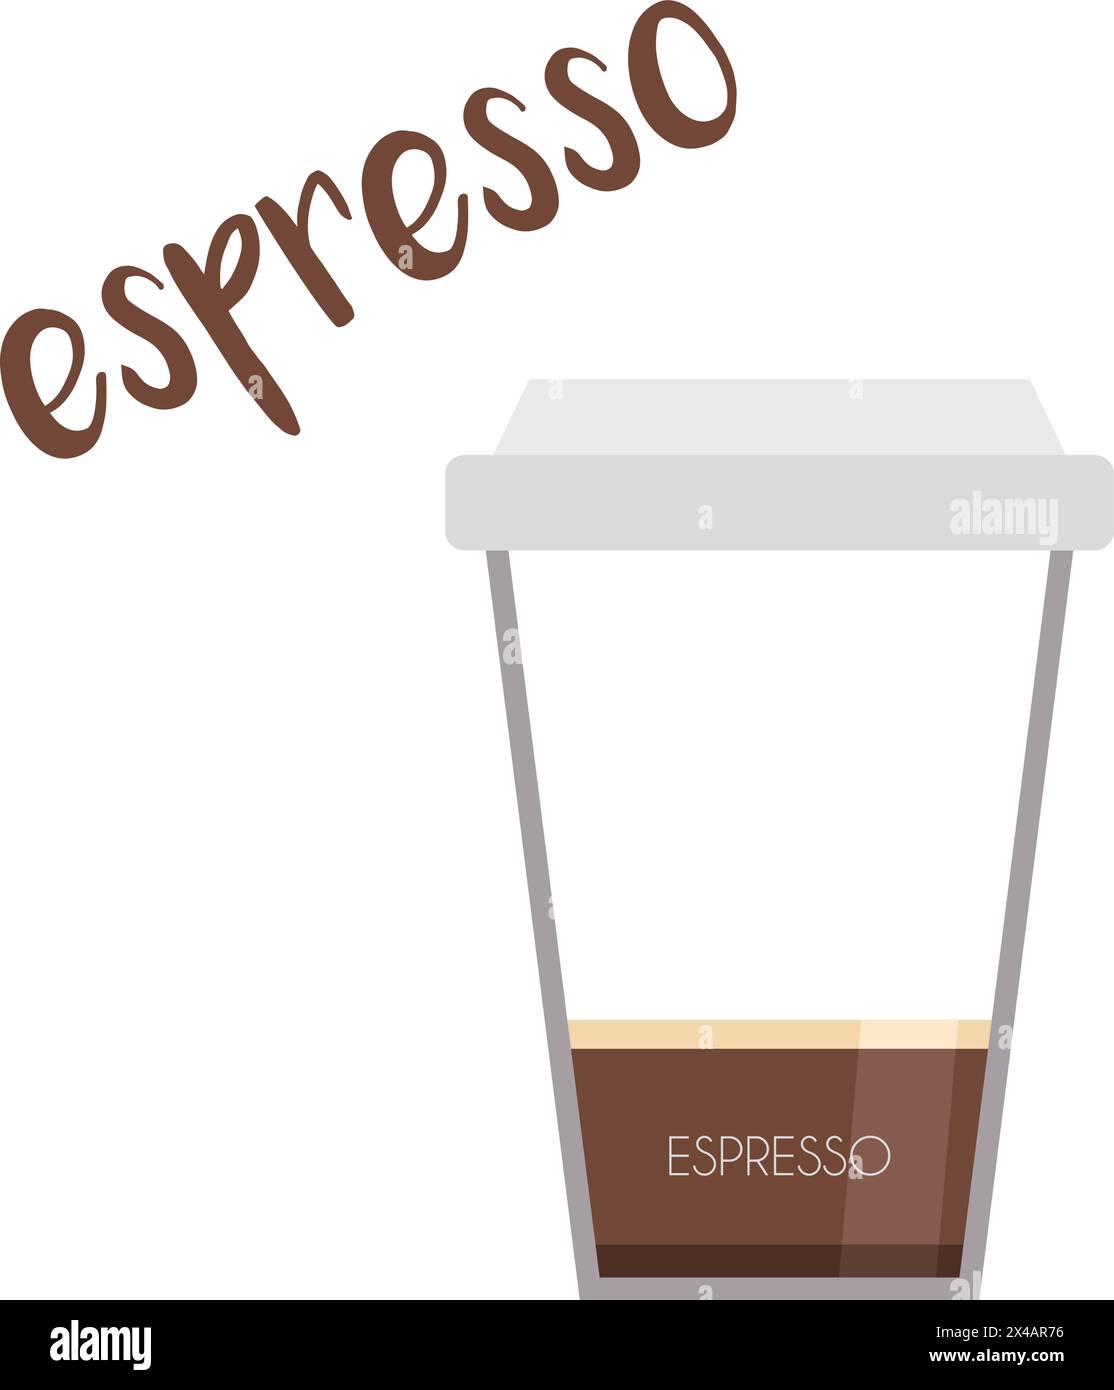 Vektor-Illustration eines Espresso-Kaffeetassen-Symbols mit seiner Zubereitung und Proportionen. Stock Vektor